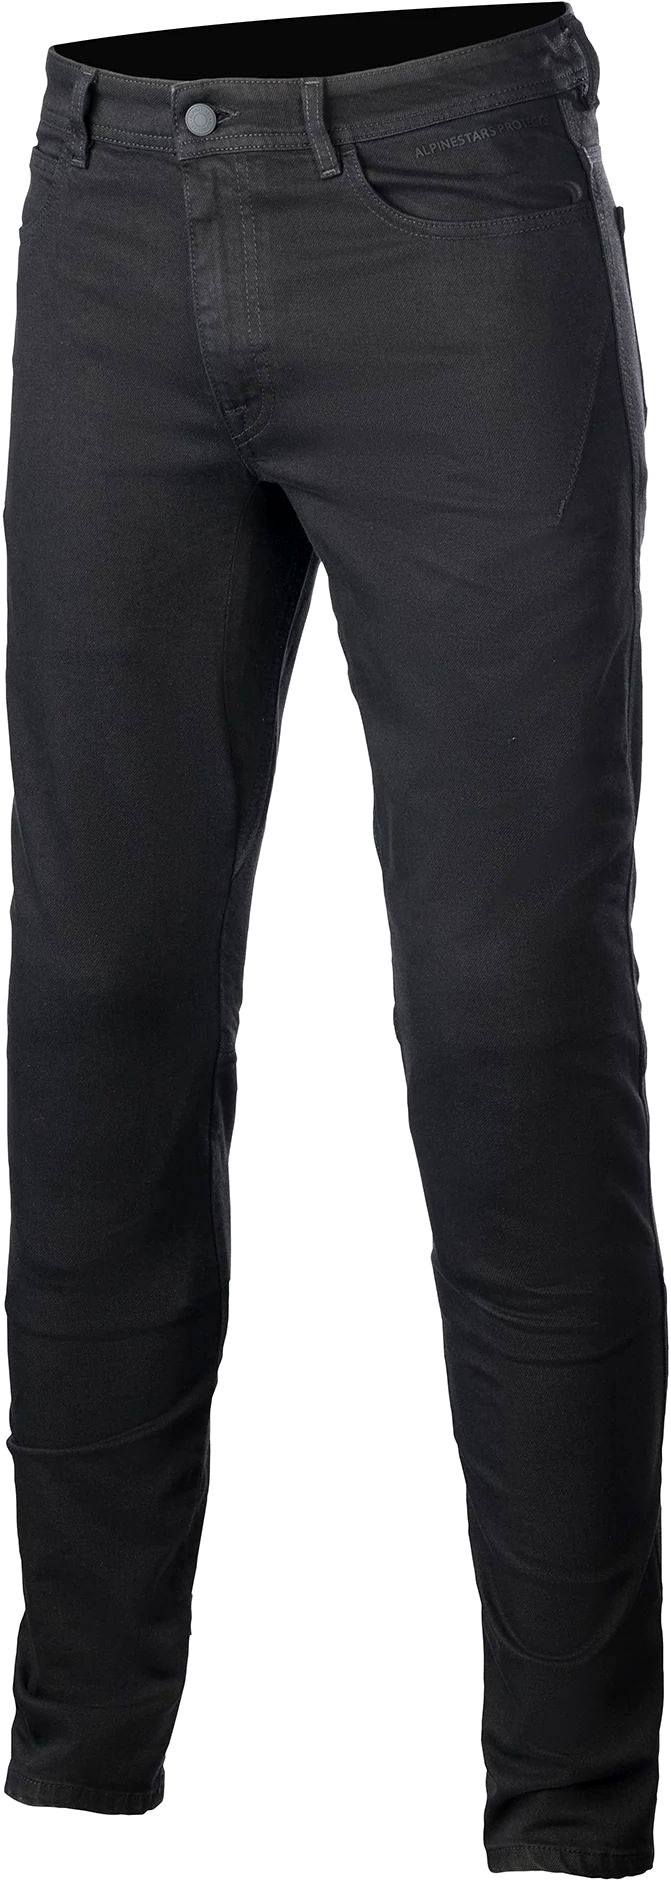 Alpinestars Argon, jeans - Noir - 40